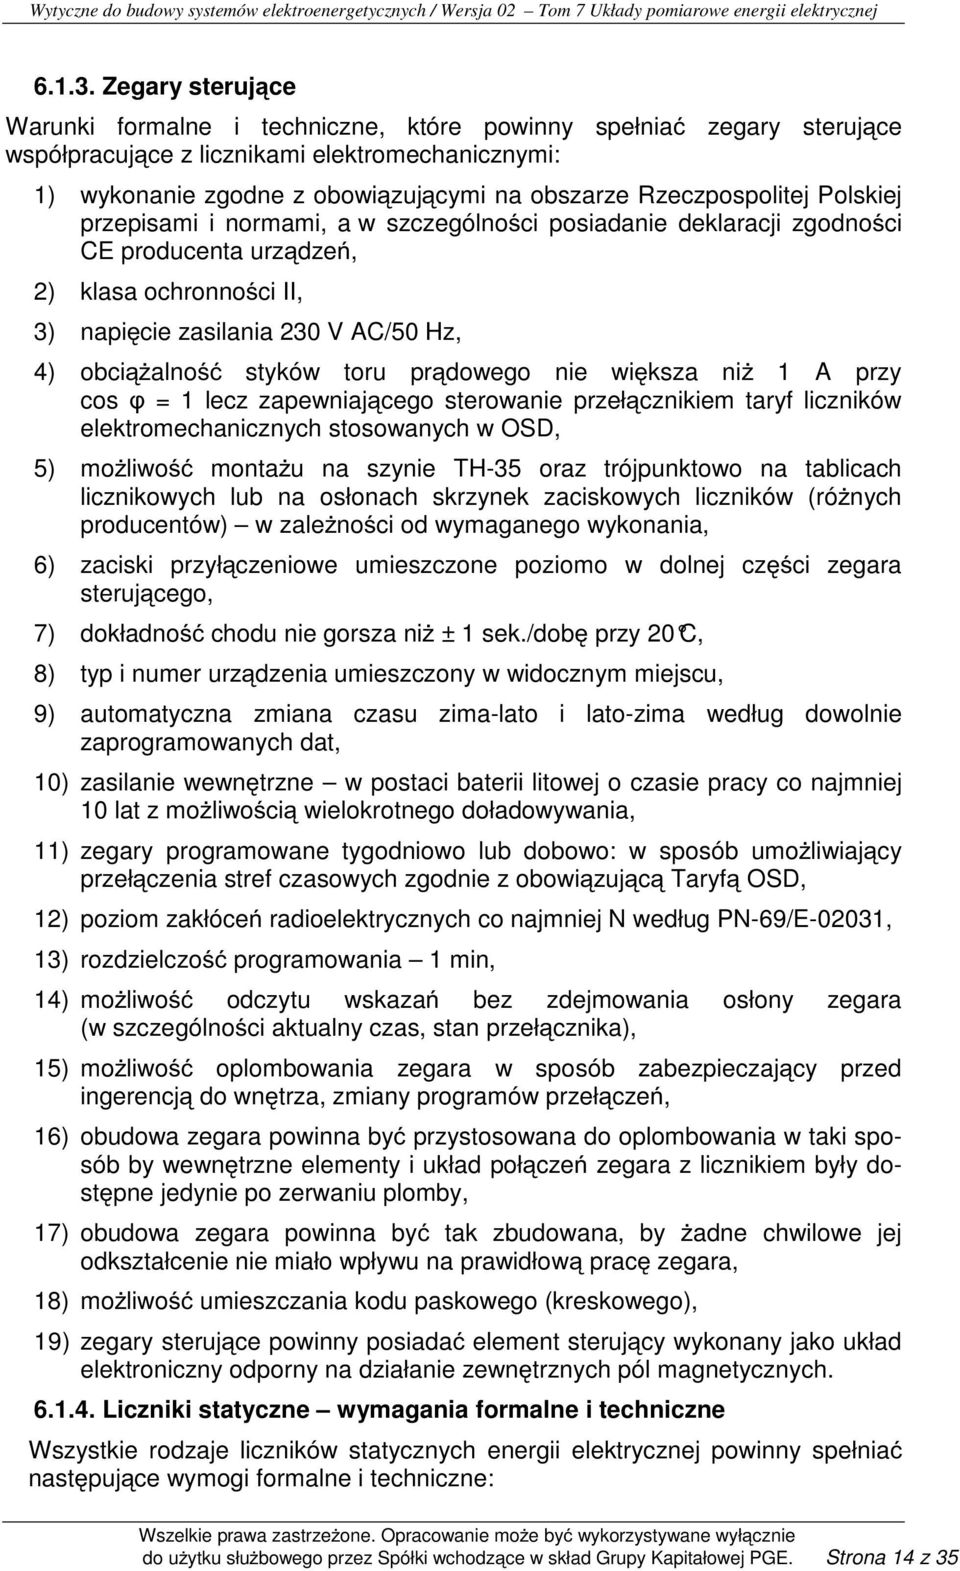 Rzeczpospolitej Polskiej przepisami i normami, a w szczególności posiadanie deklaracji zgodności CE producenta urządzeń, 2) klasa ochronności II, 3) napięcie zasilania 230 V AC/50 Hz, 4) obciąŝalność